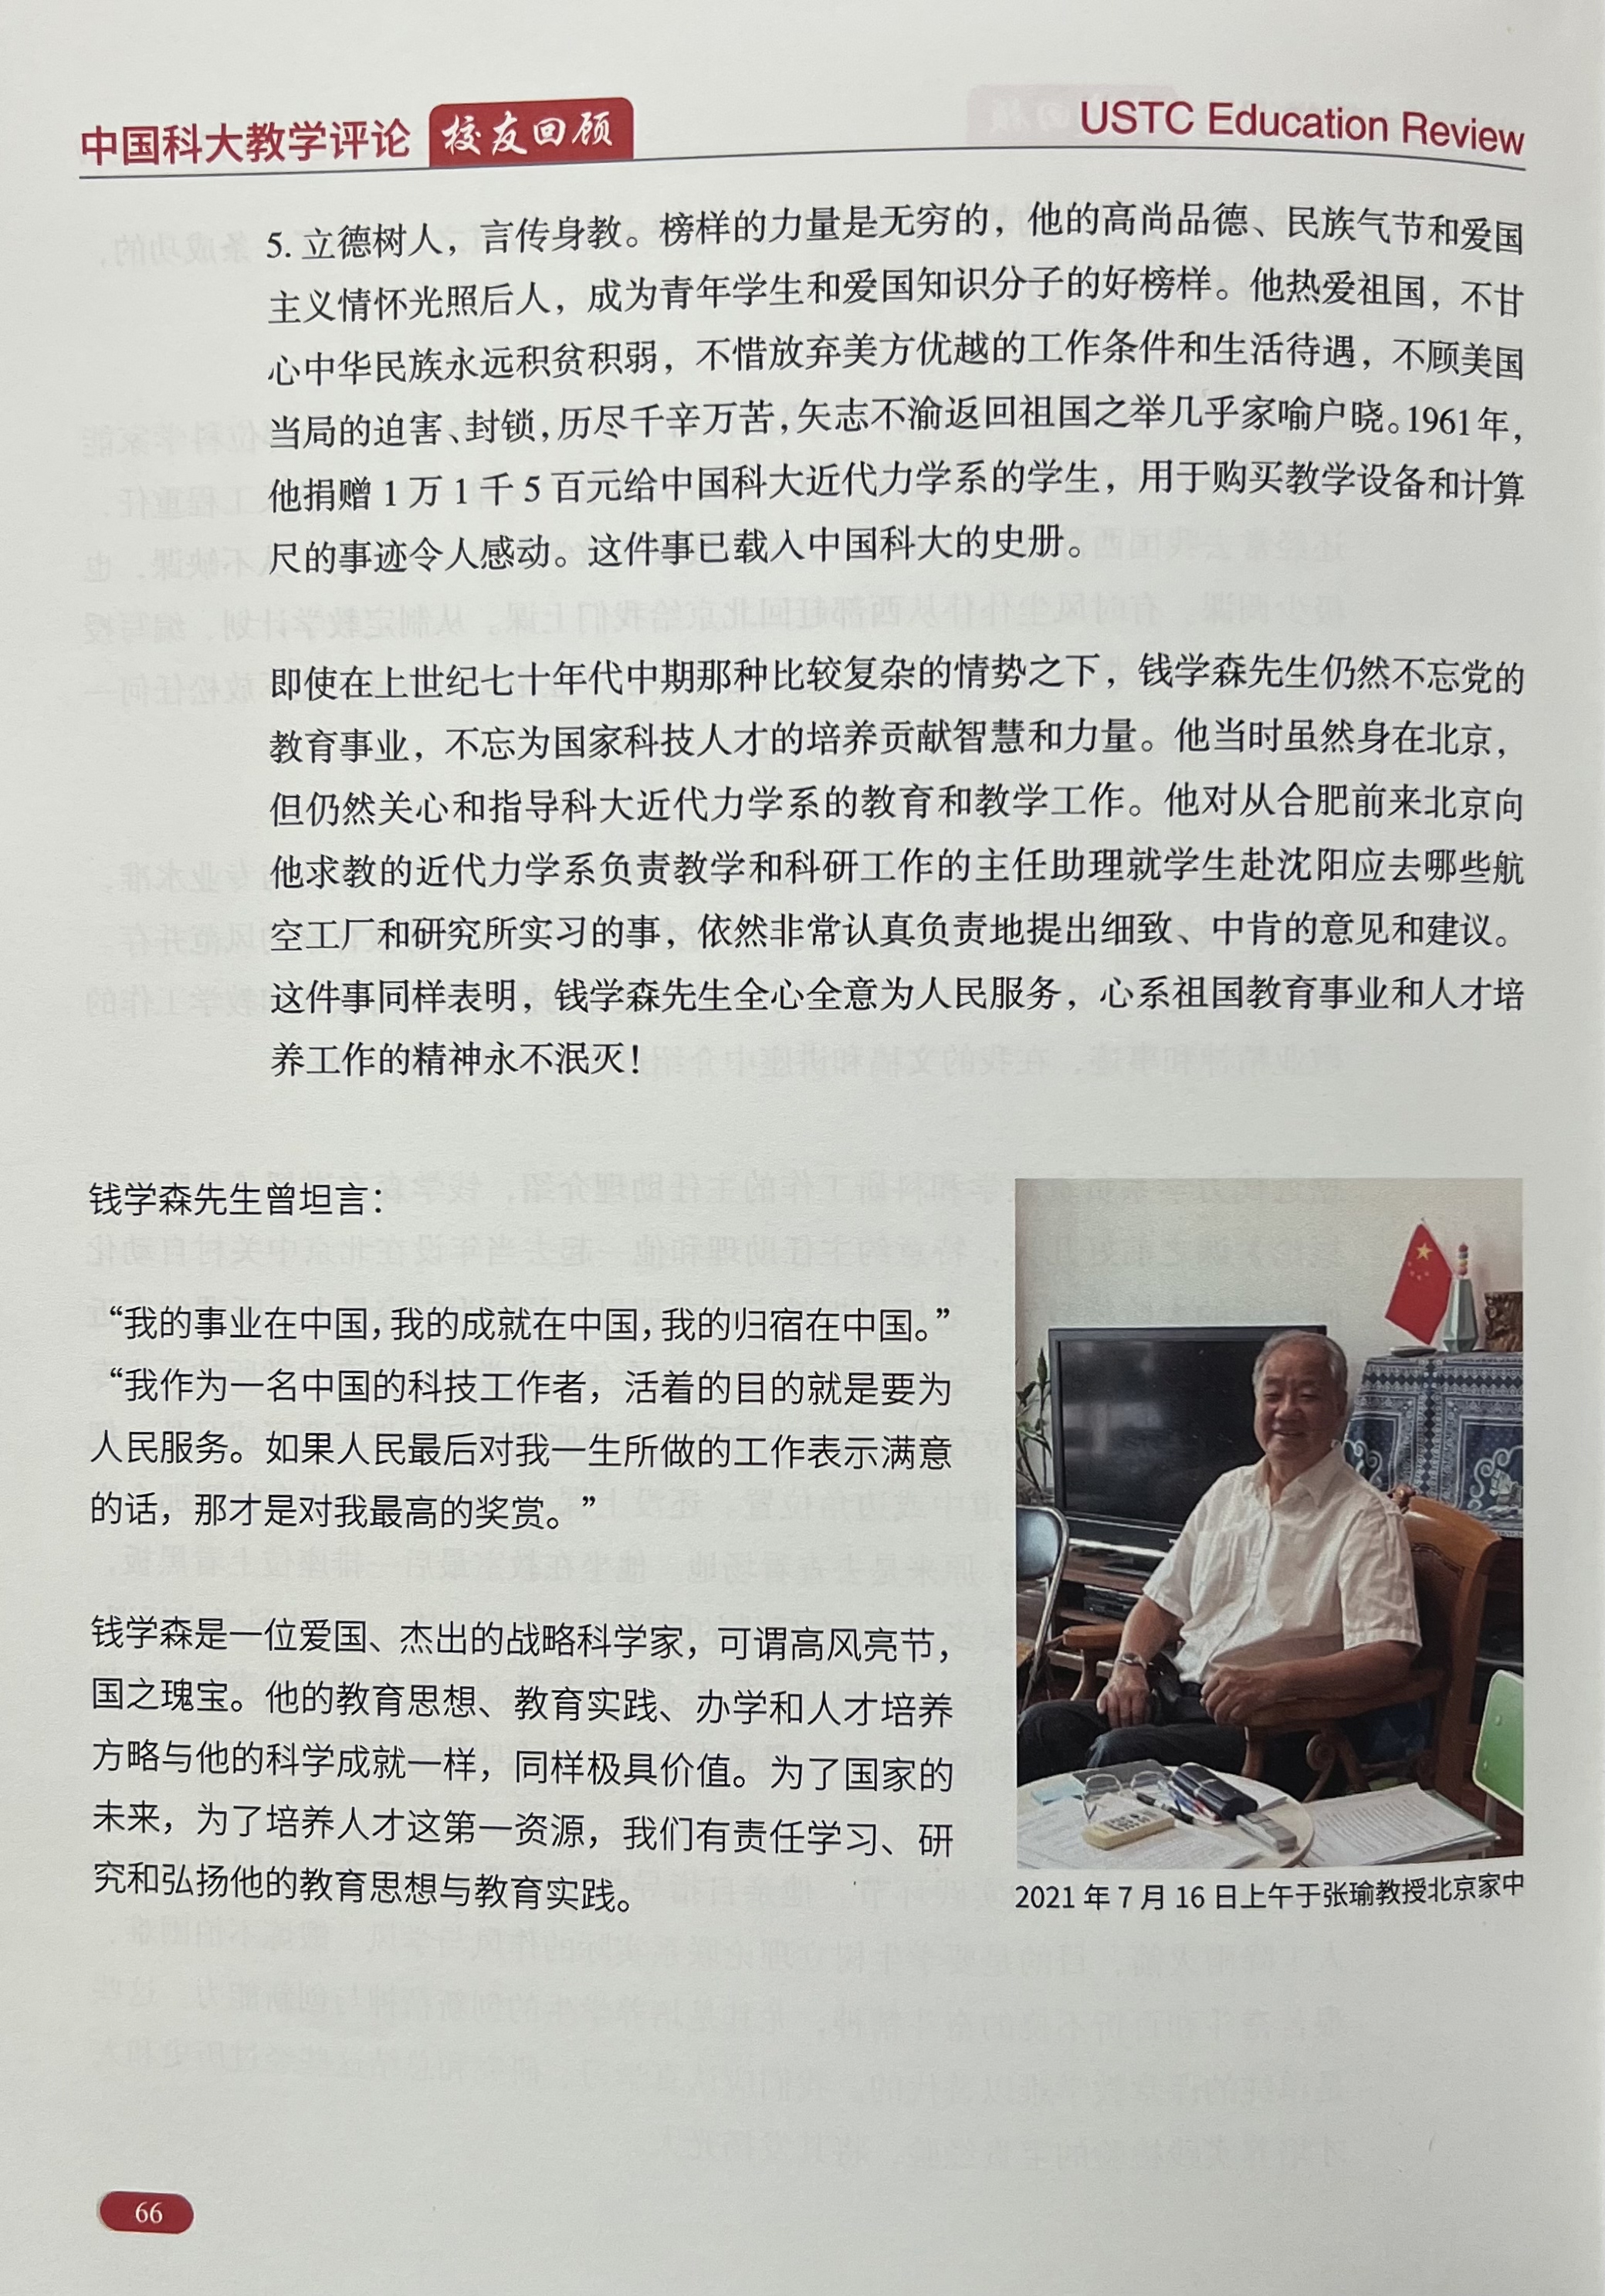 钱学森先生引领的成才之路——访中国科大首届校友张瑜，谈钱学森教育思想与教育实践